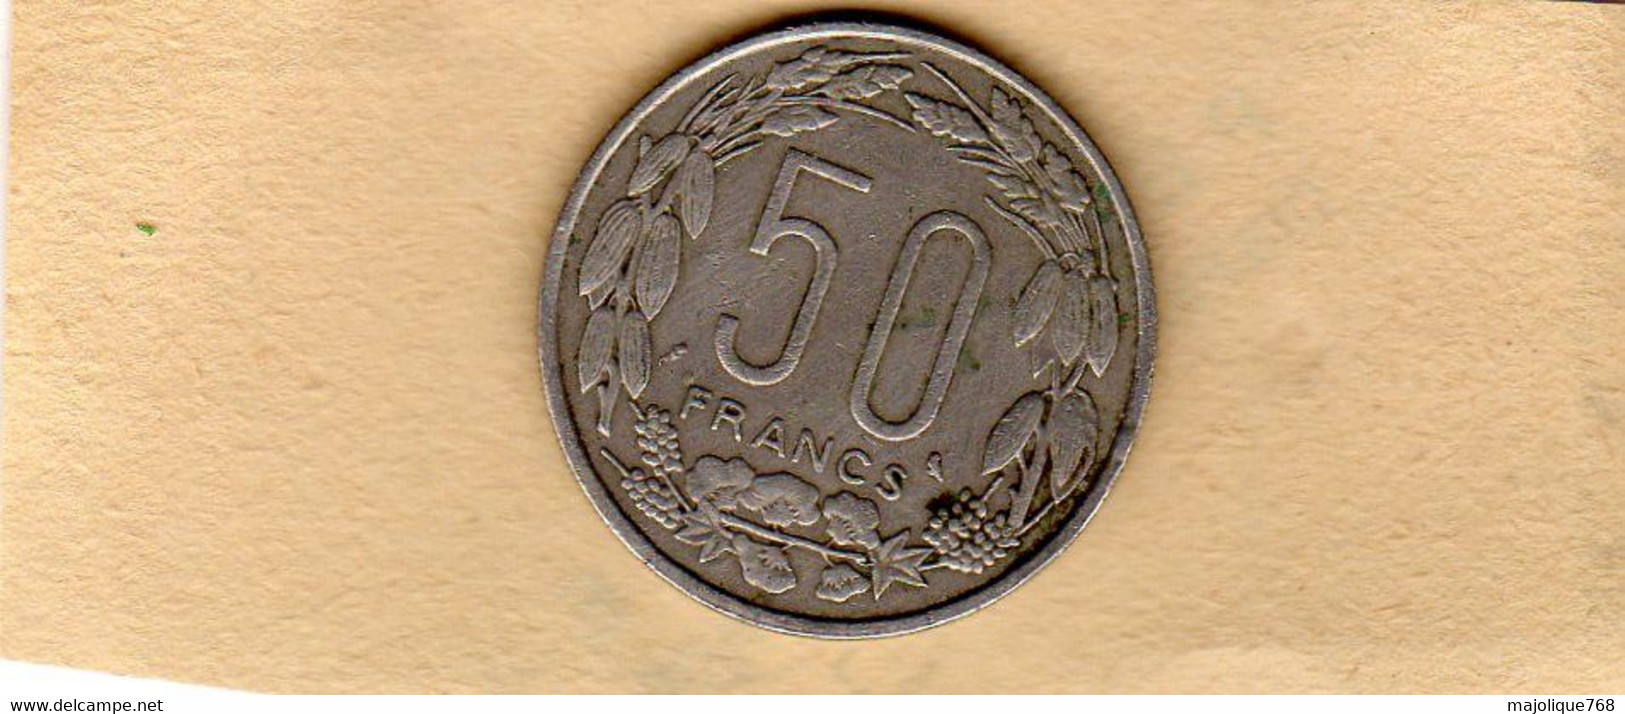 Piéce 50 Francs Republique Centrafricaine-Congo-Gabon-Tchad-1963 En TTB En Nickel - Centrafricaine (République)